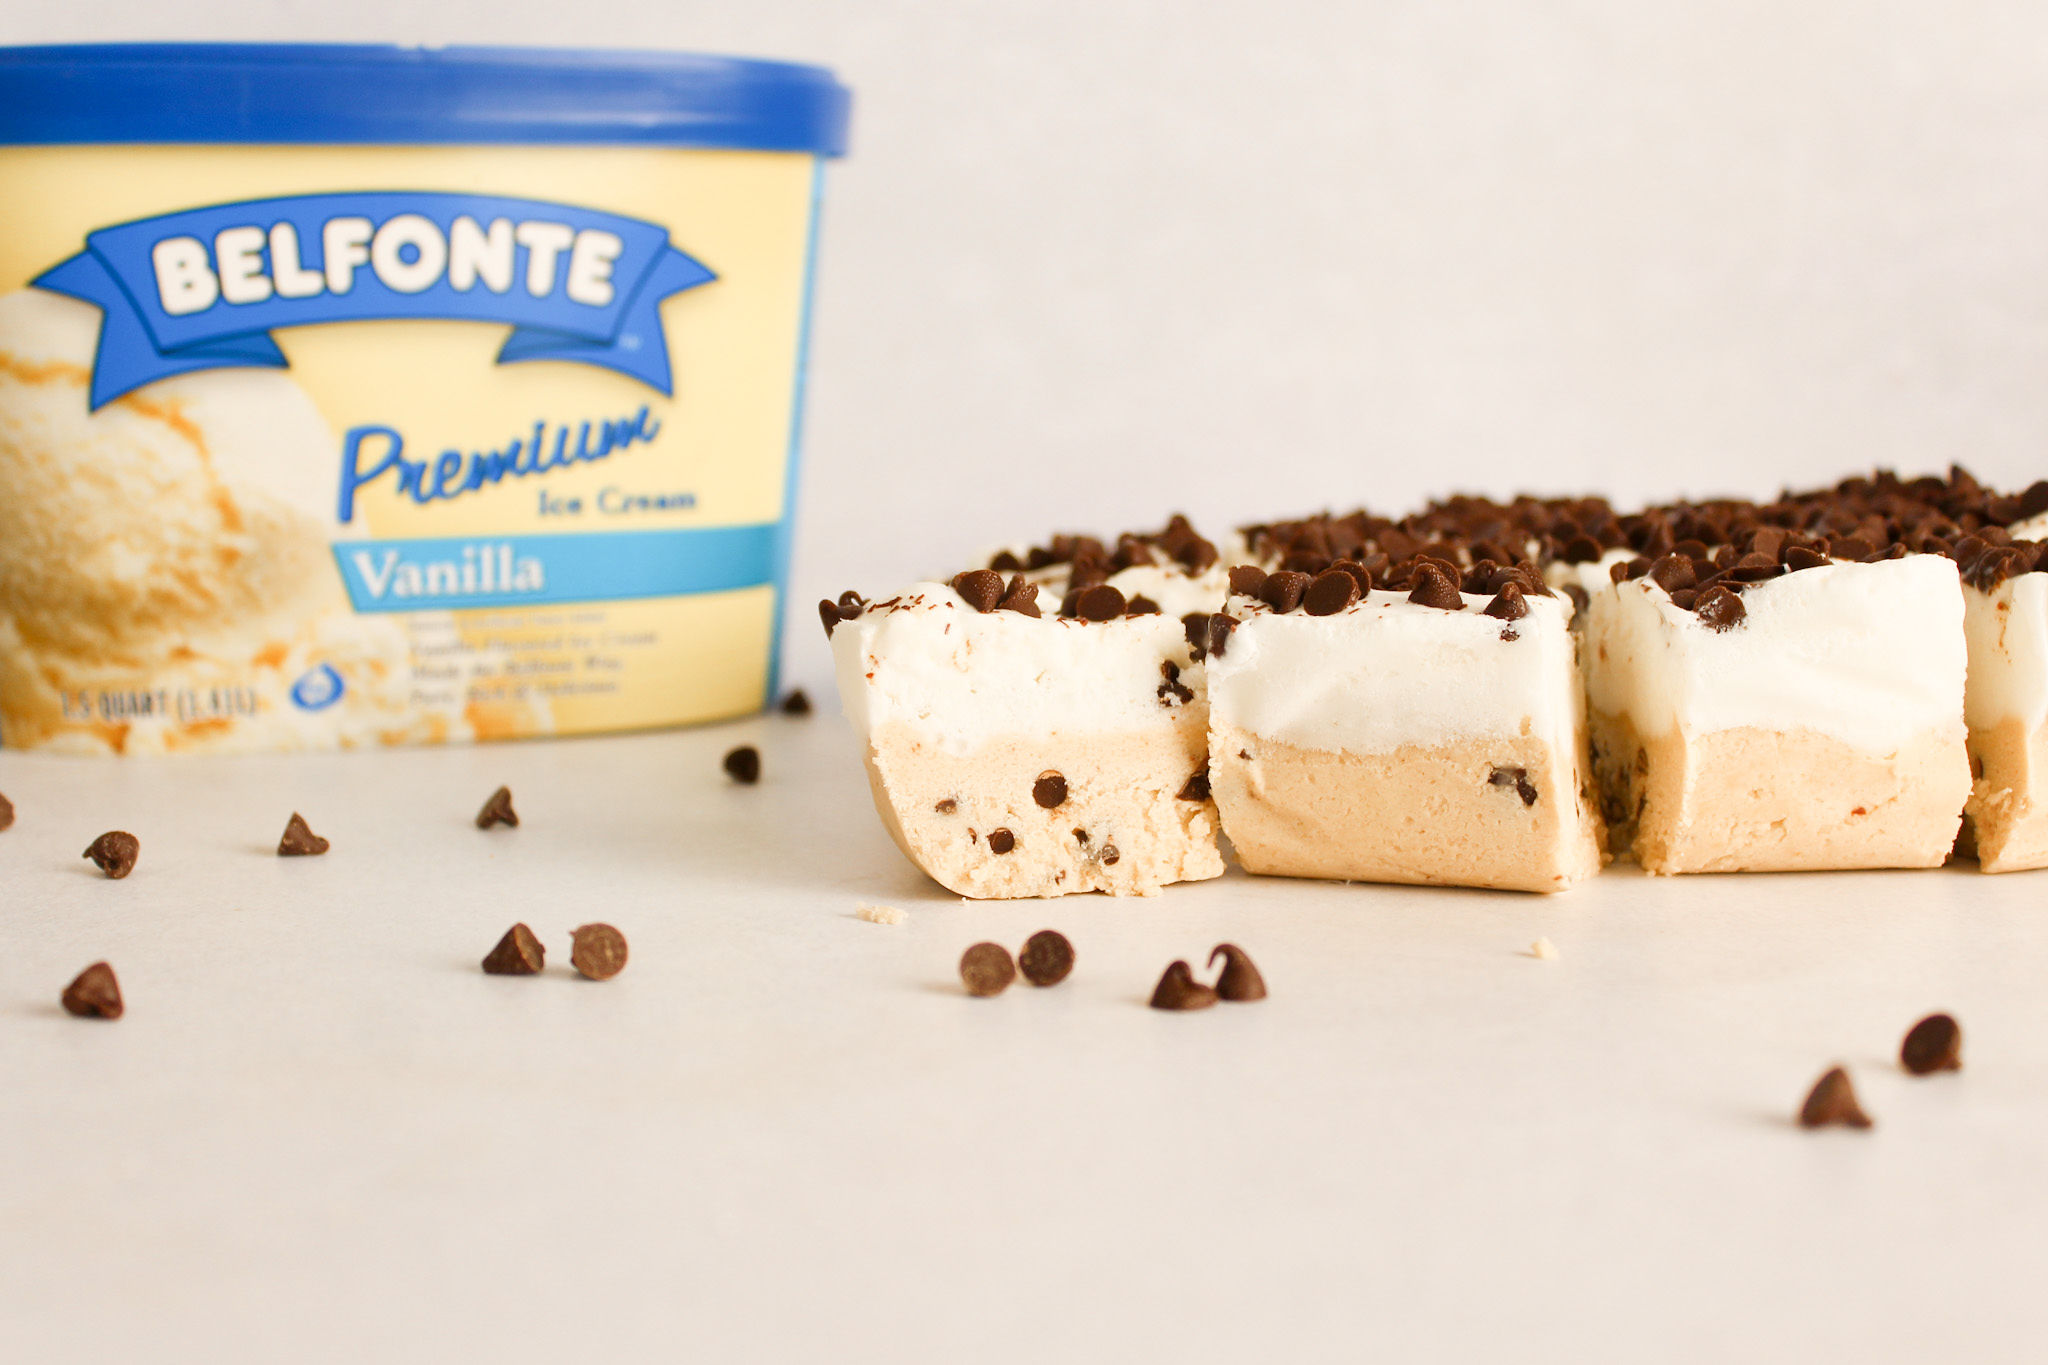 cookie dough ice cream bars and container of Belfonte Premium Vanilla ice cream